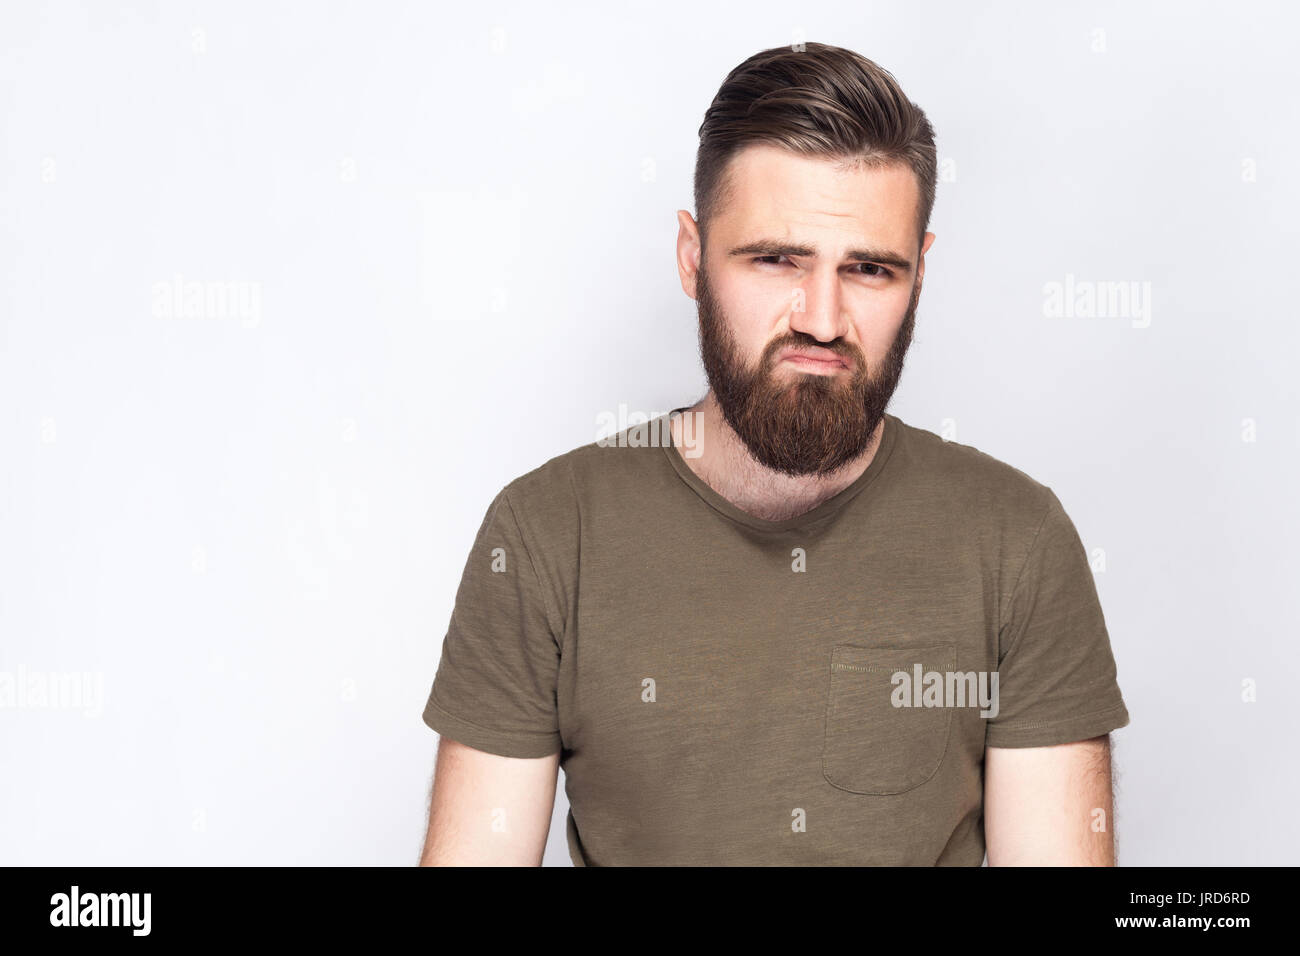 Portrait d'homme barbu triste malheureux avec t-shirt vert foncé à l'arrière-plan gris clair. studio shot. Banque D'Images